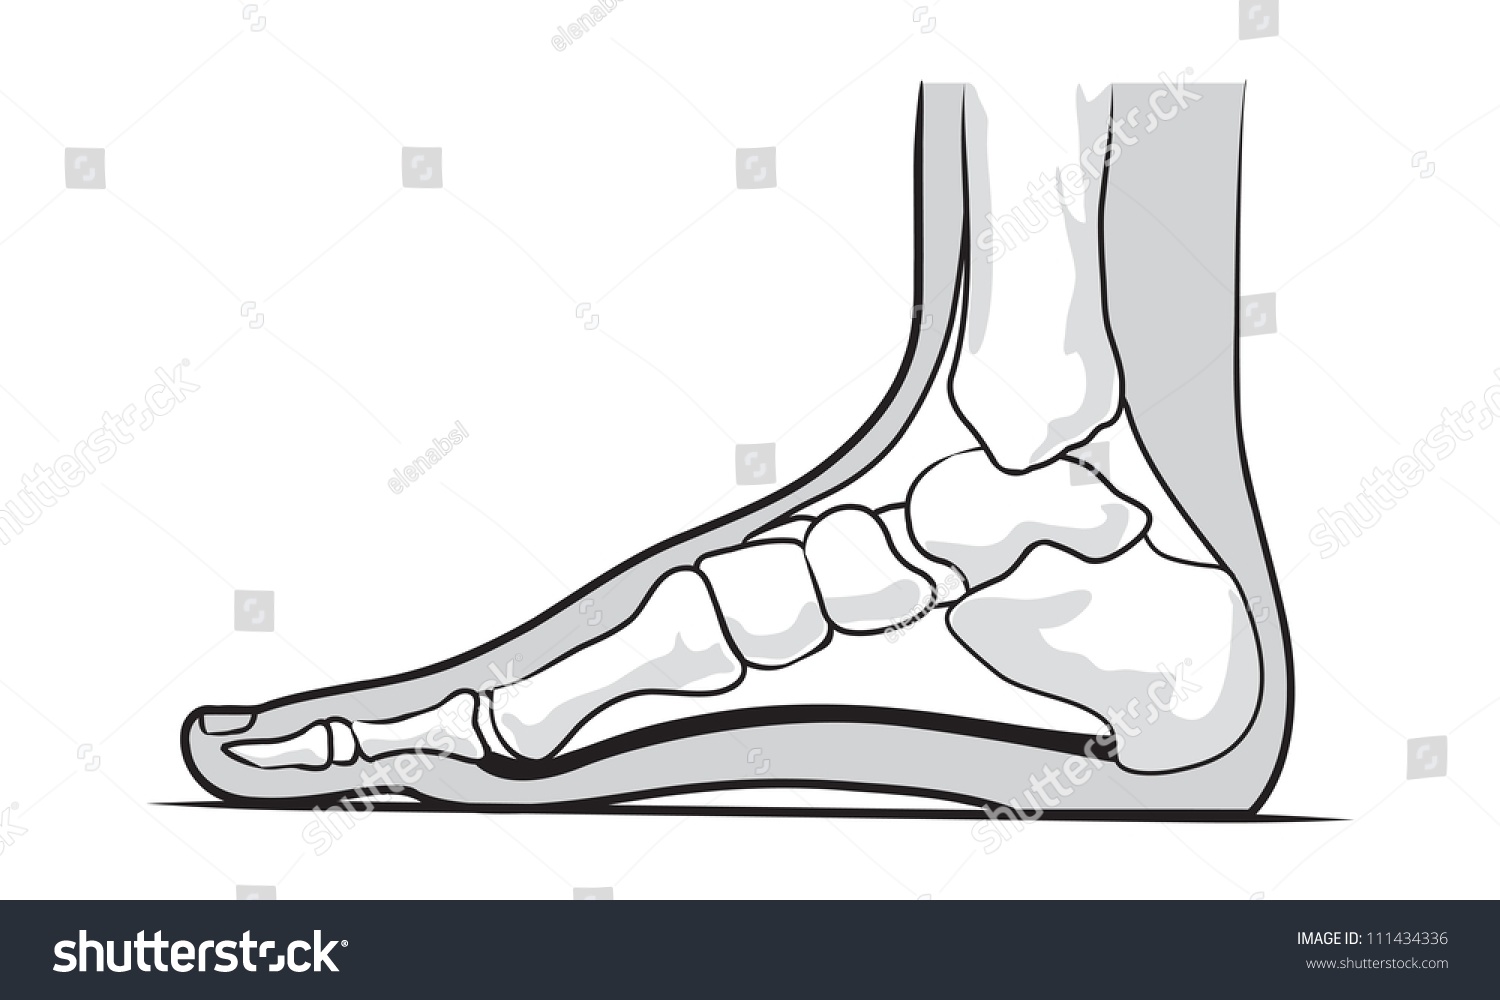 Foot side. Скелет лодыжки человека. Подометрия стопы это. Как изобразить фут.